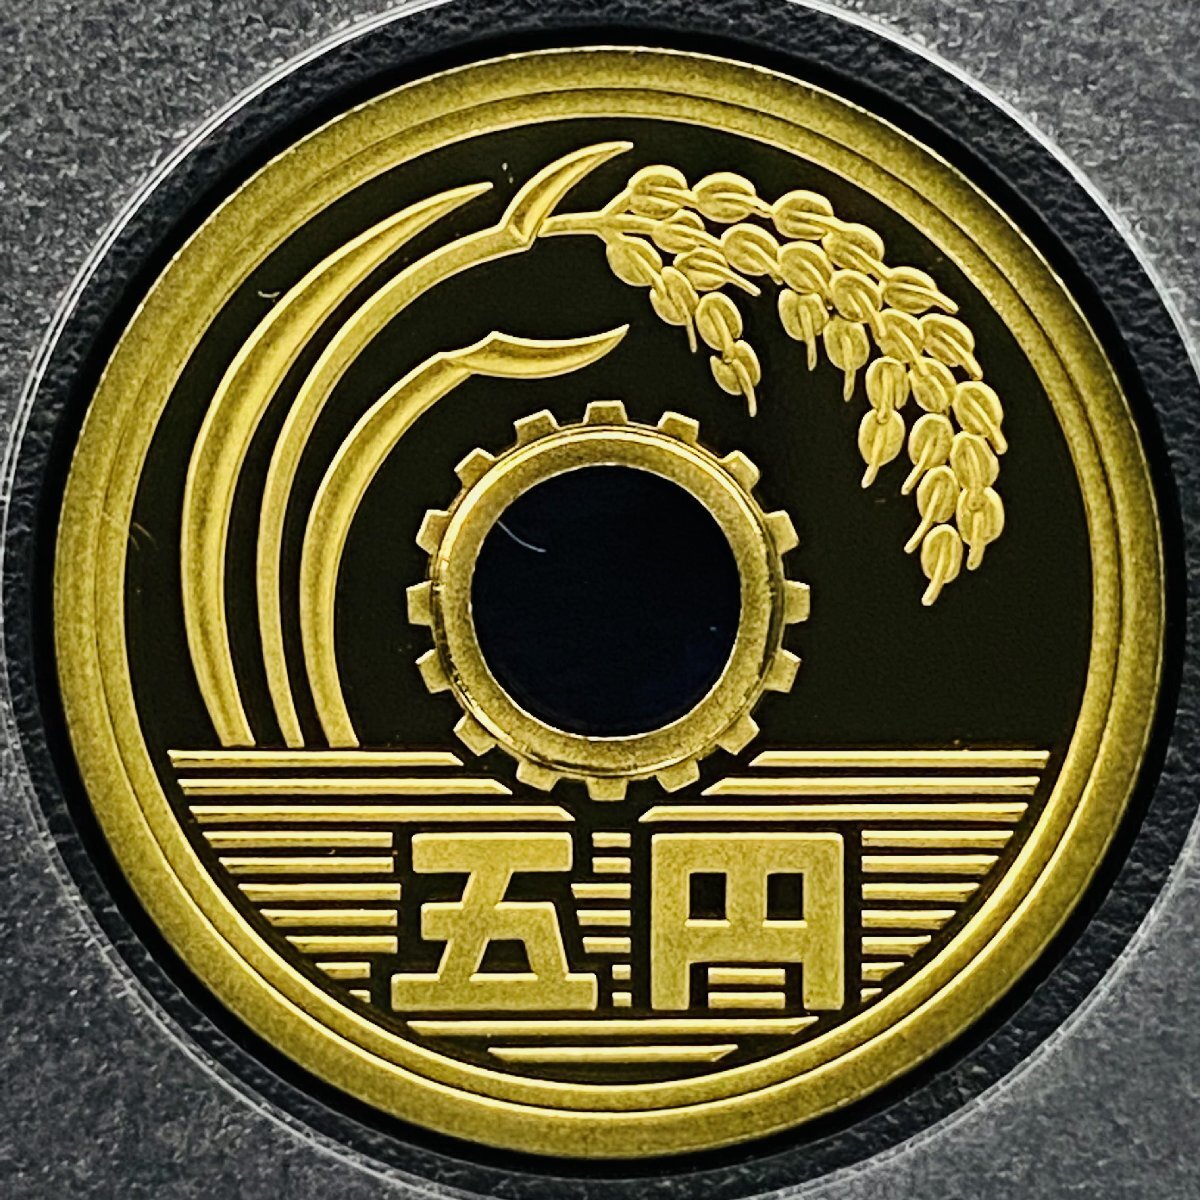 2010年 平成22年 通常プルーフ貨幣セット 額面666円 年銘板有 全揃い 記念硬貨 記念貨幣 貨幣組合 日本円 限定貨幣 コレクション P2010_画像7